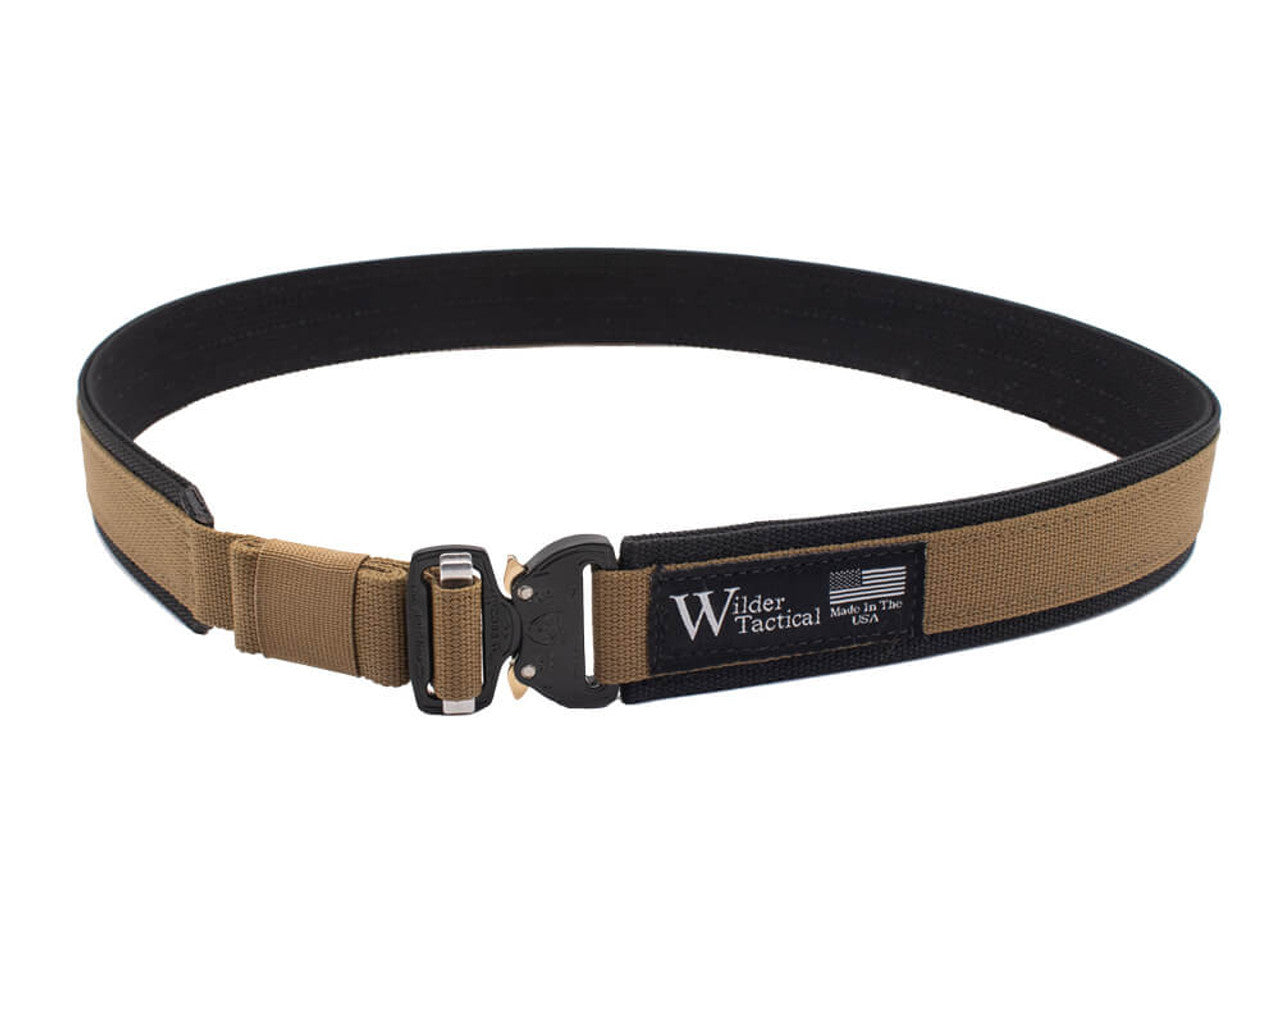 Wilder Tactical The Minimalist Belt